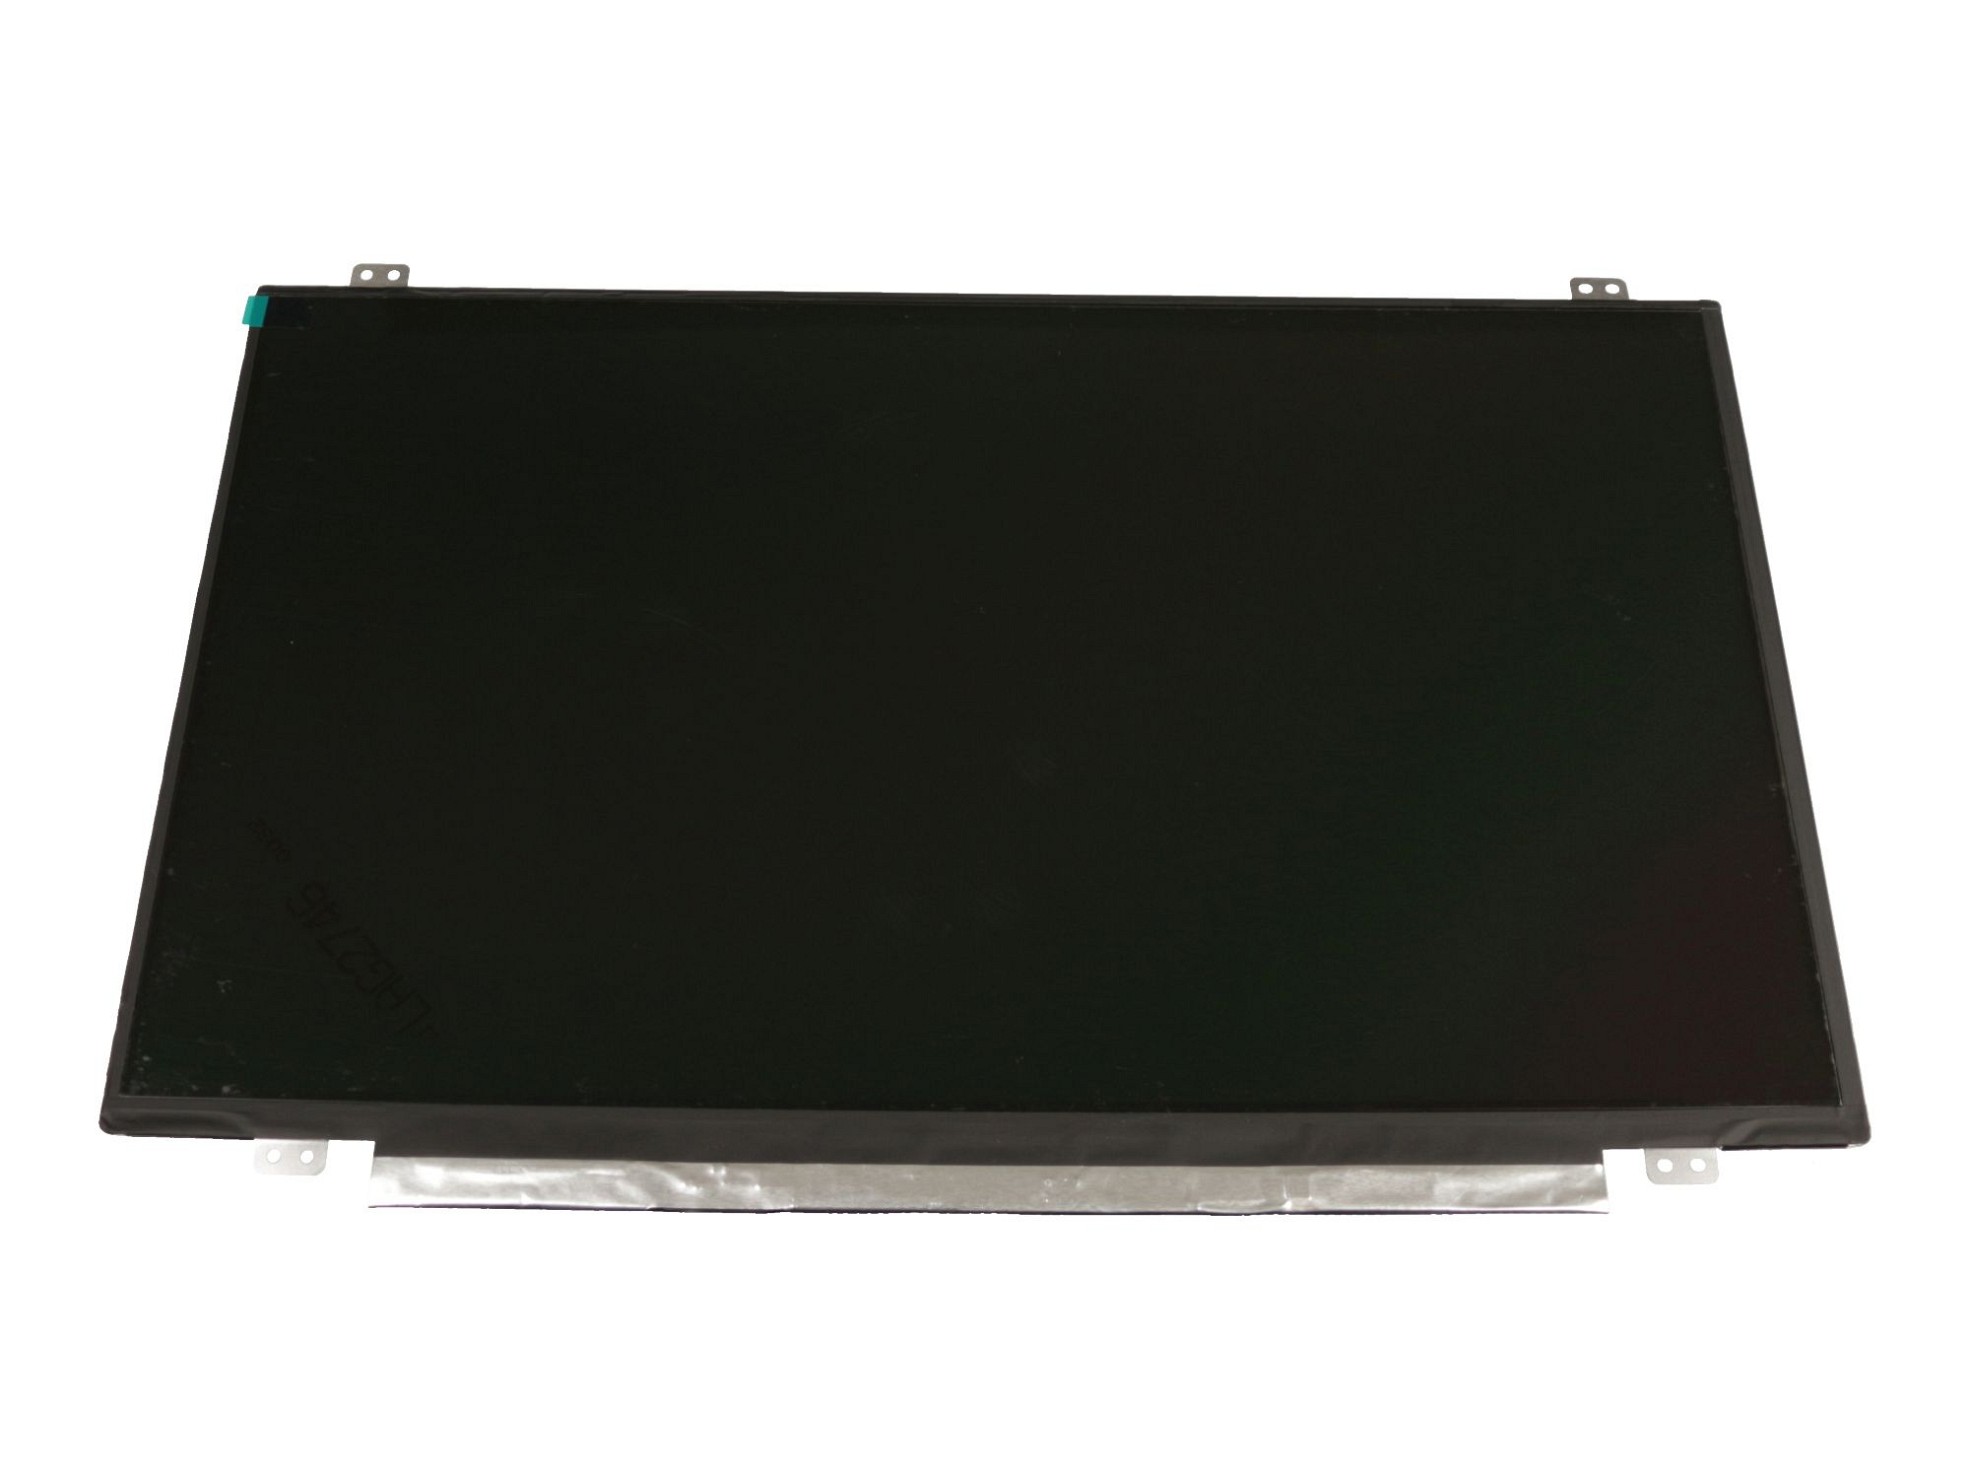 LG LP140WH8-TPD1 Display (1366x768) matt slimline